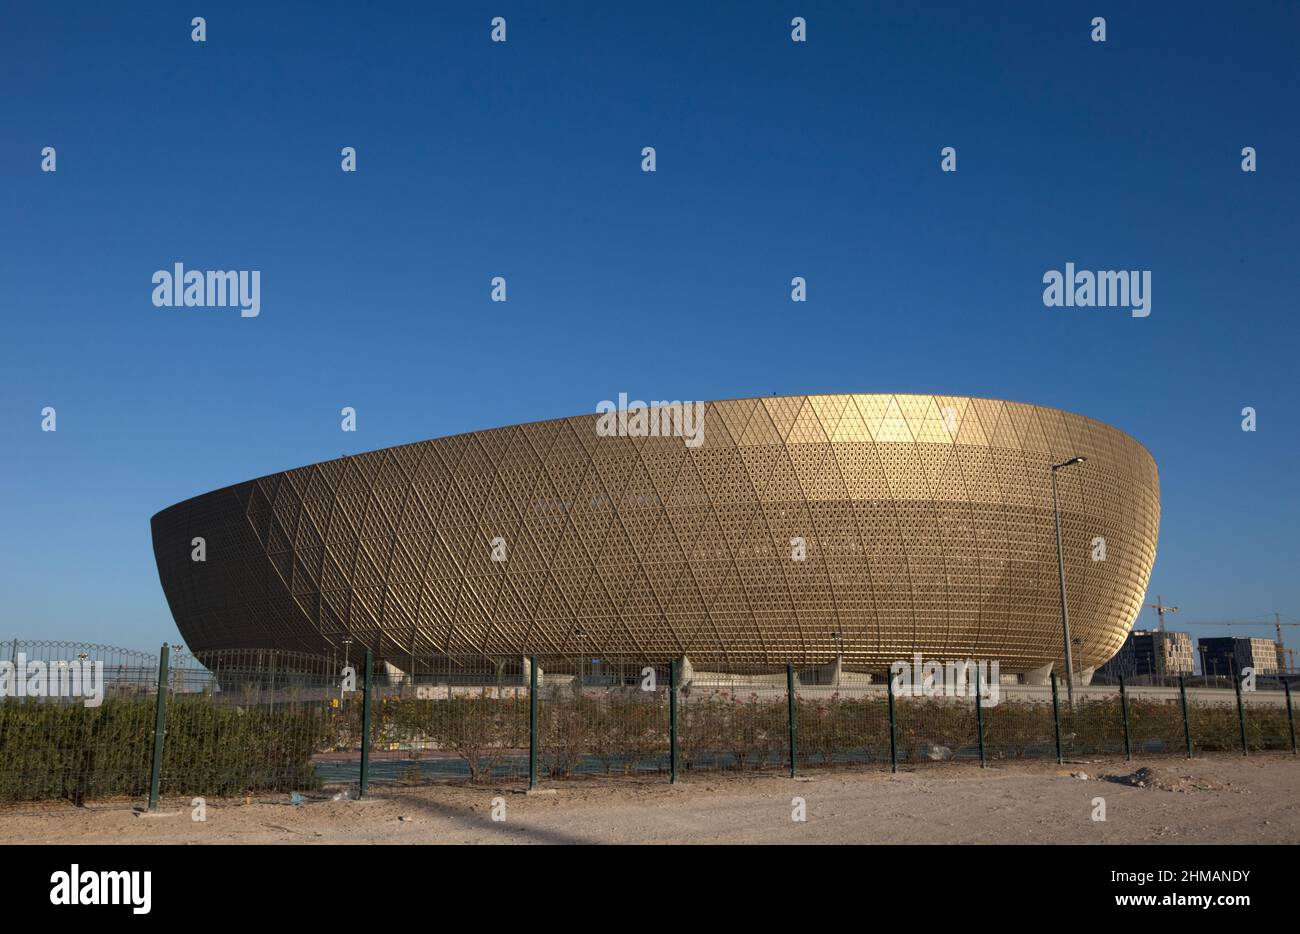 Lo stadio Lusail, con 80.000 posti a sedere. È qui che si terrà la finale  della Coppa del mondo FIFA Qatar 2022™, con miliardi di persone in tutto il  mondo a guardare